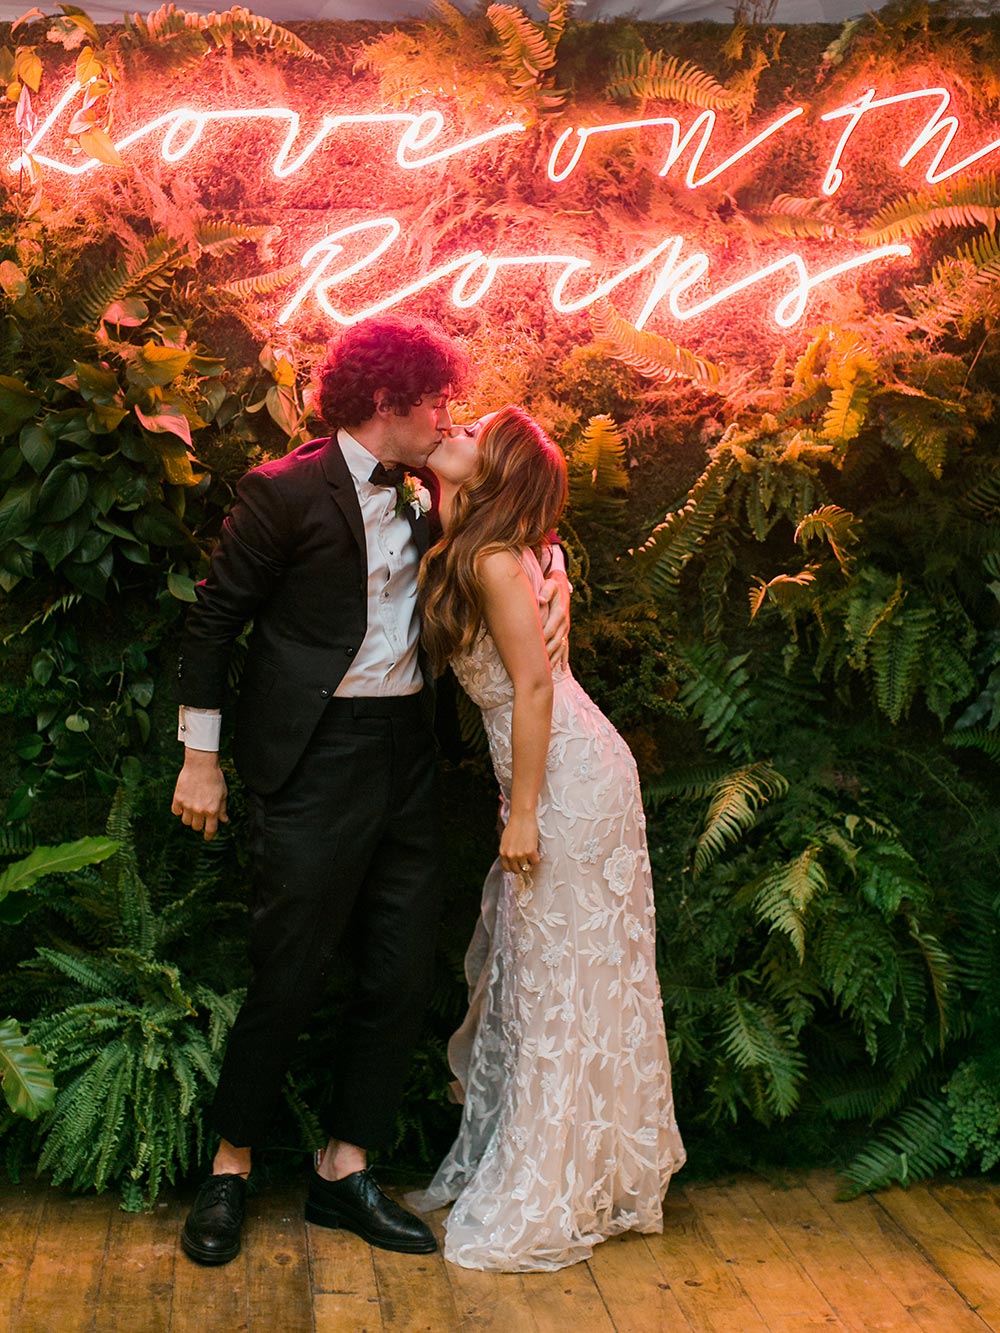 neon wedding signage backdrop